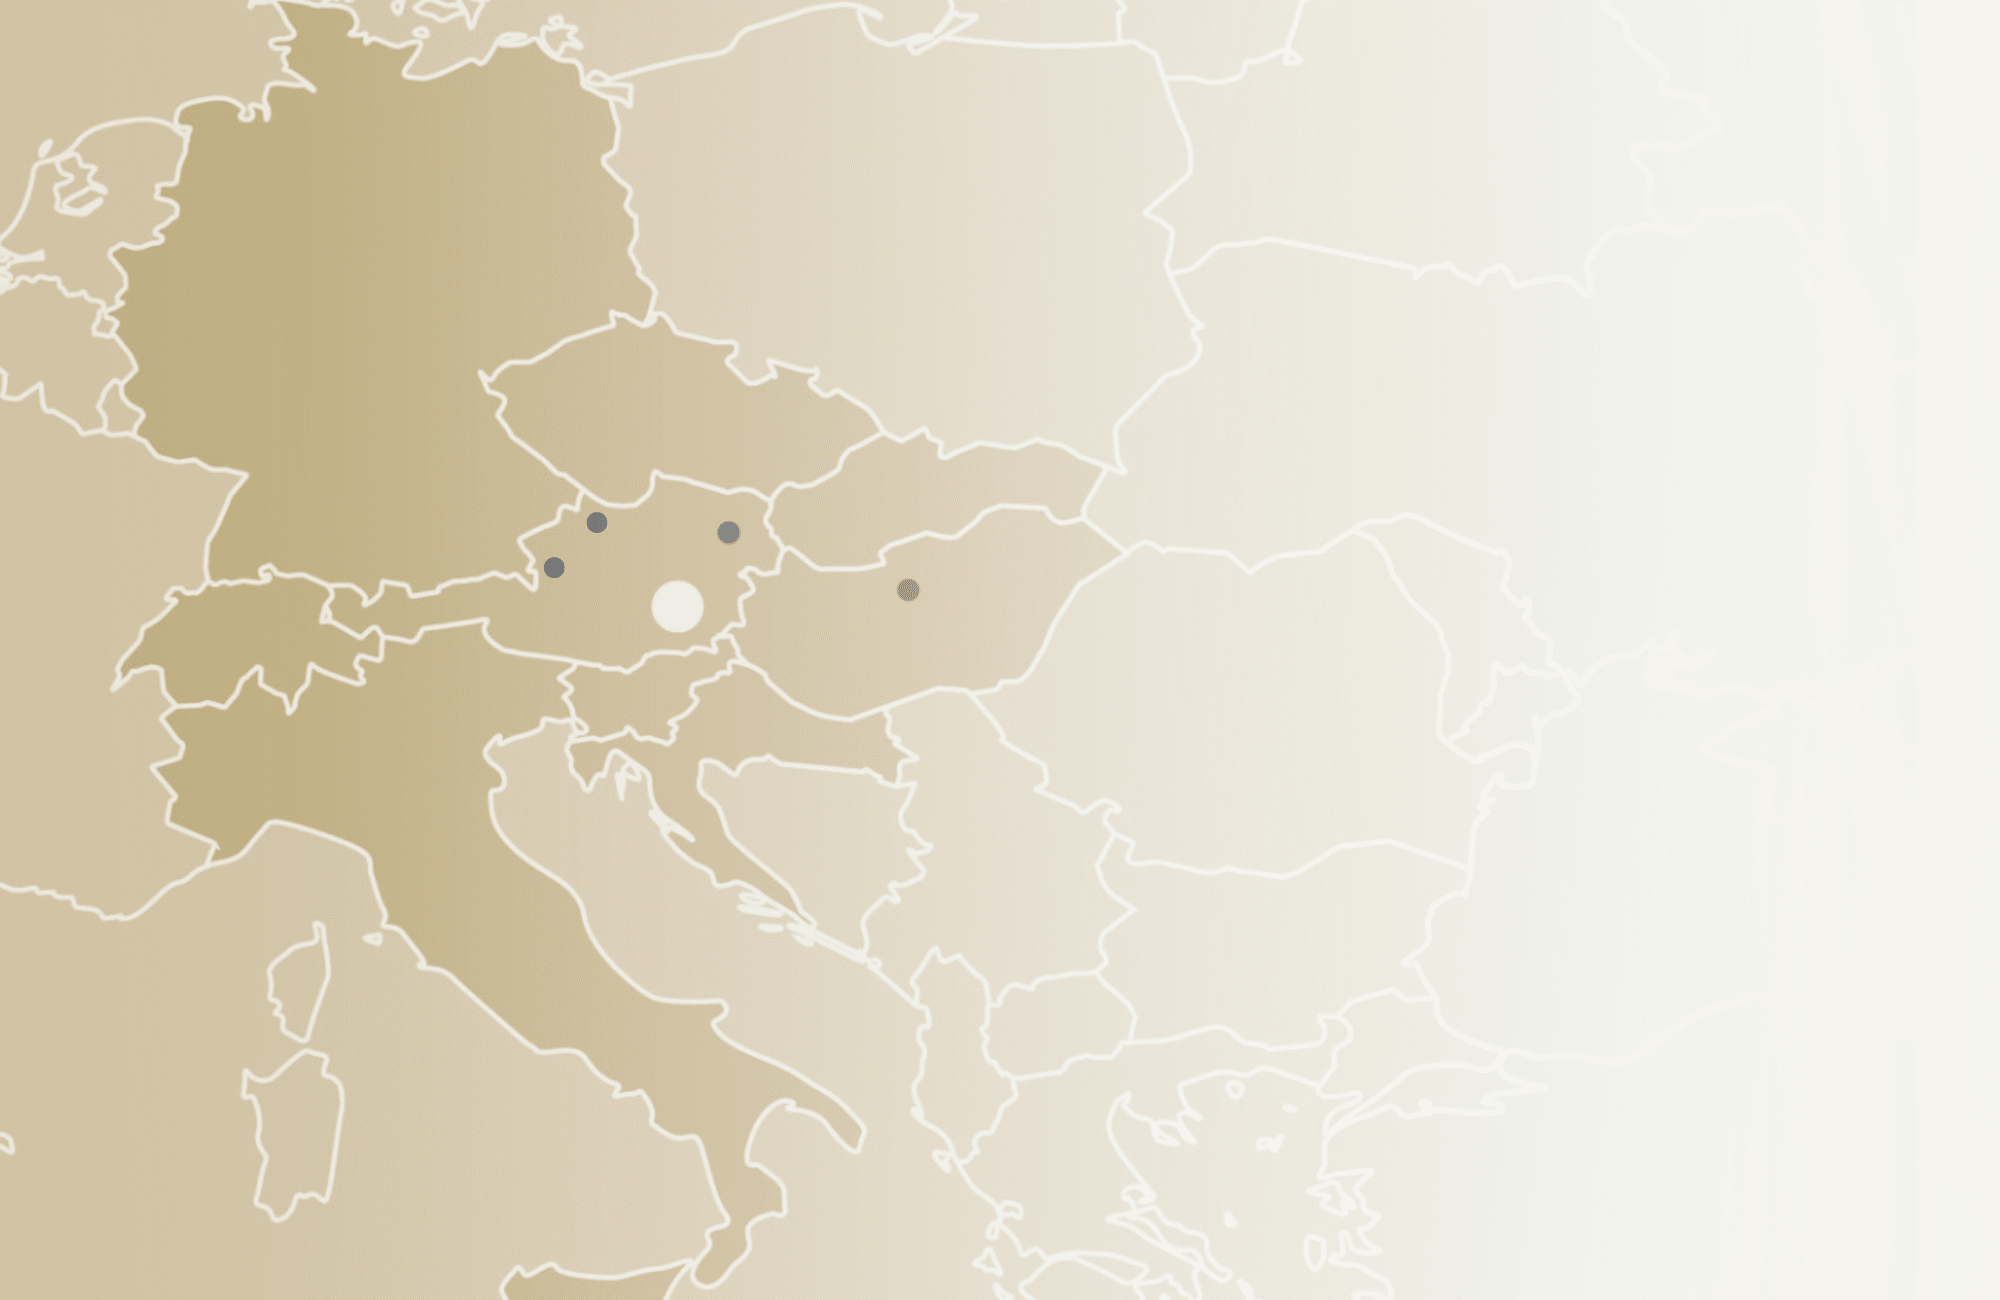 Europa-Landkarte mit Schwerpunkt auf Mitteleuropa